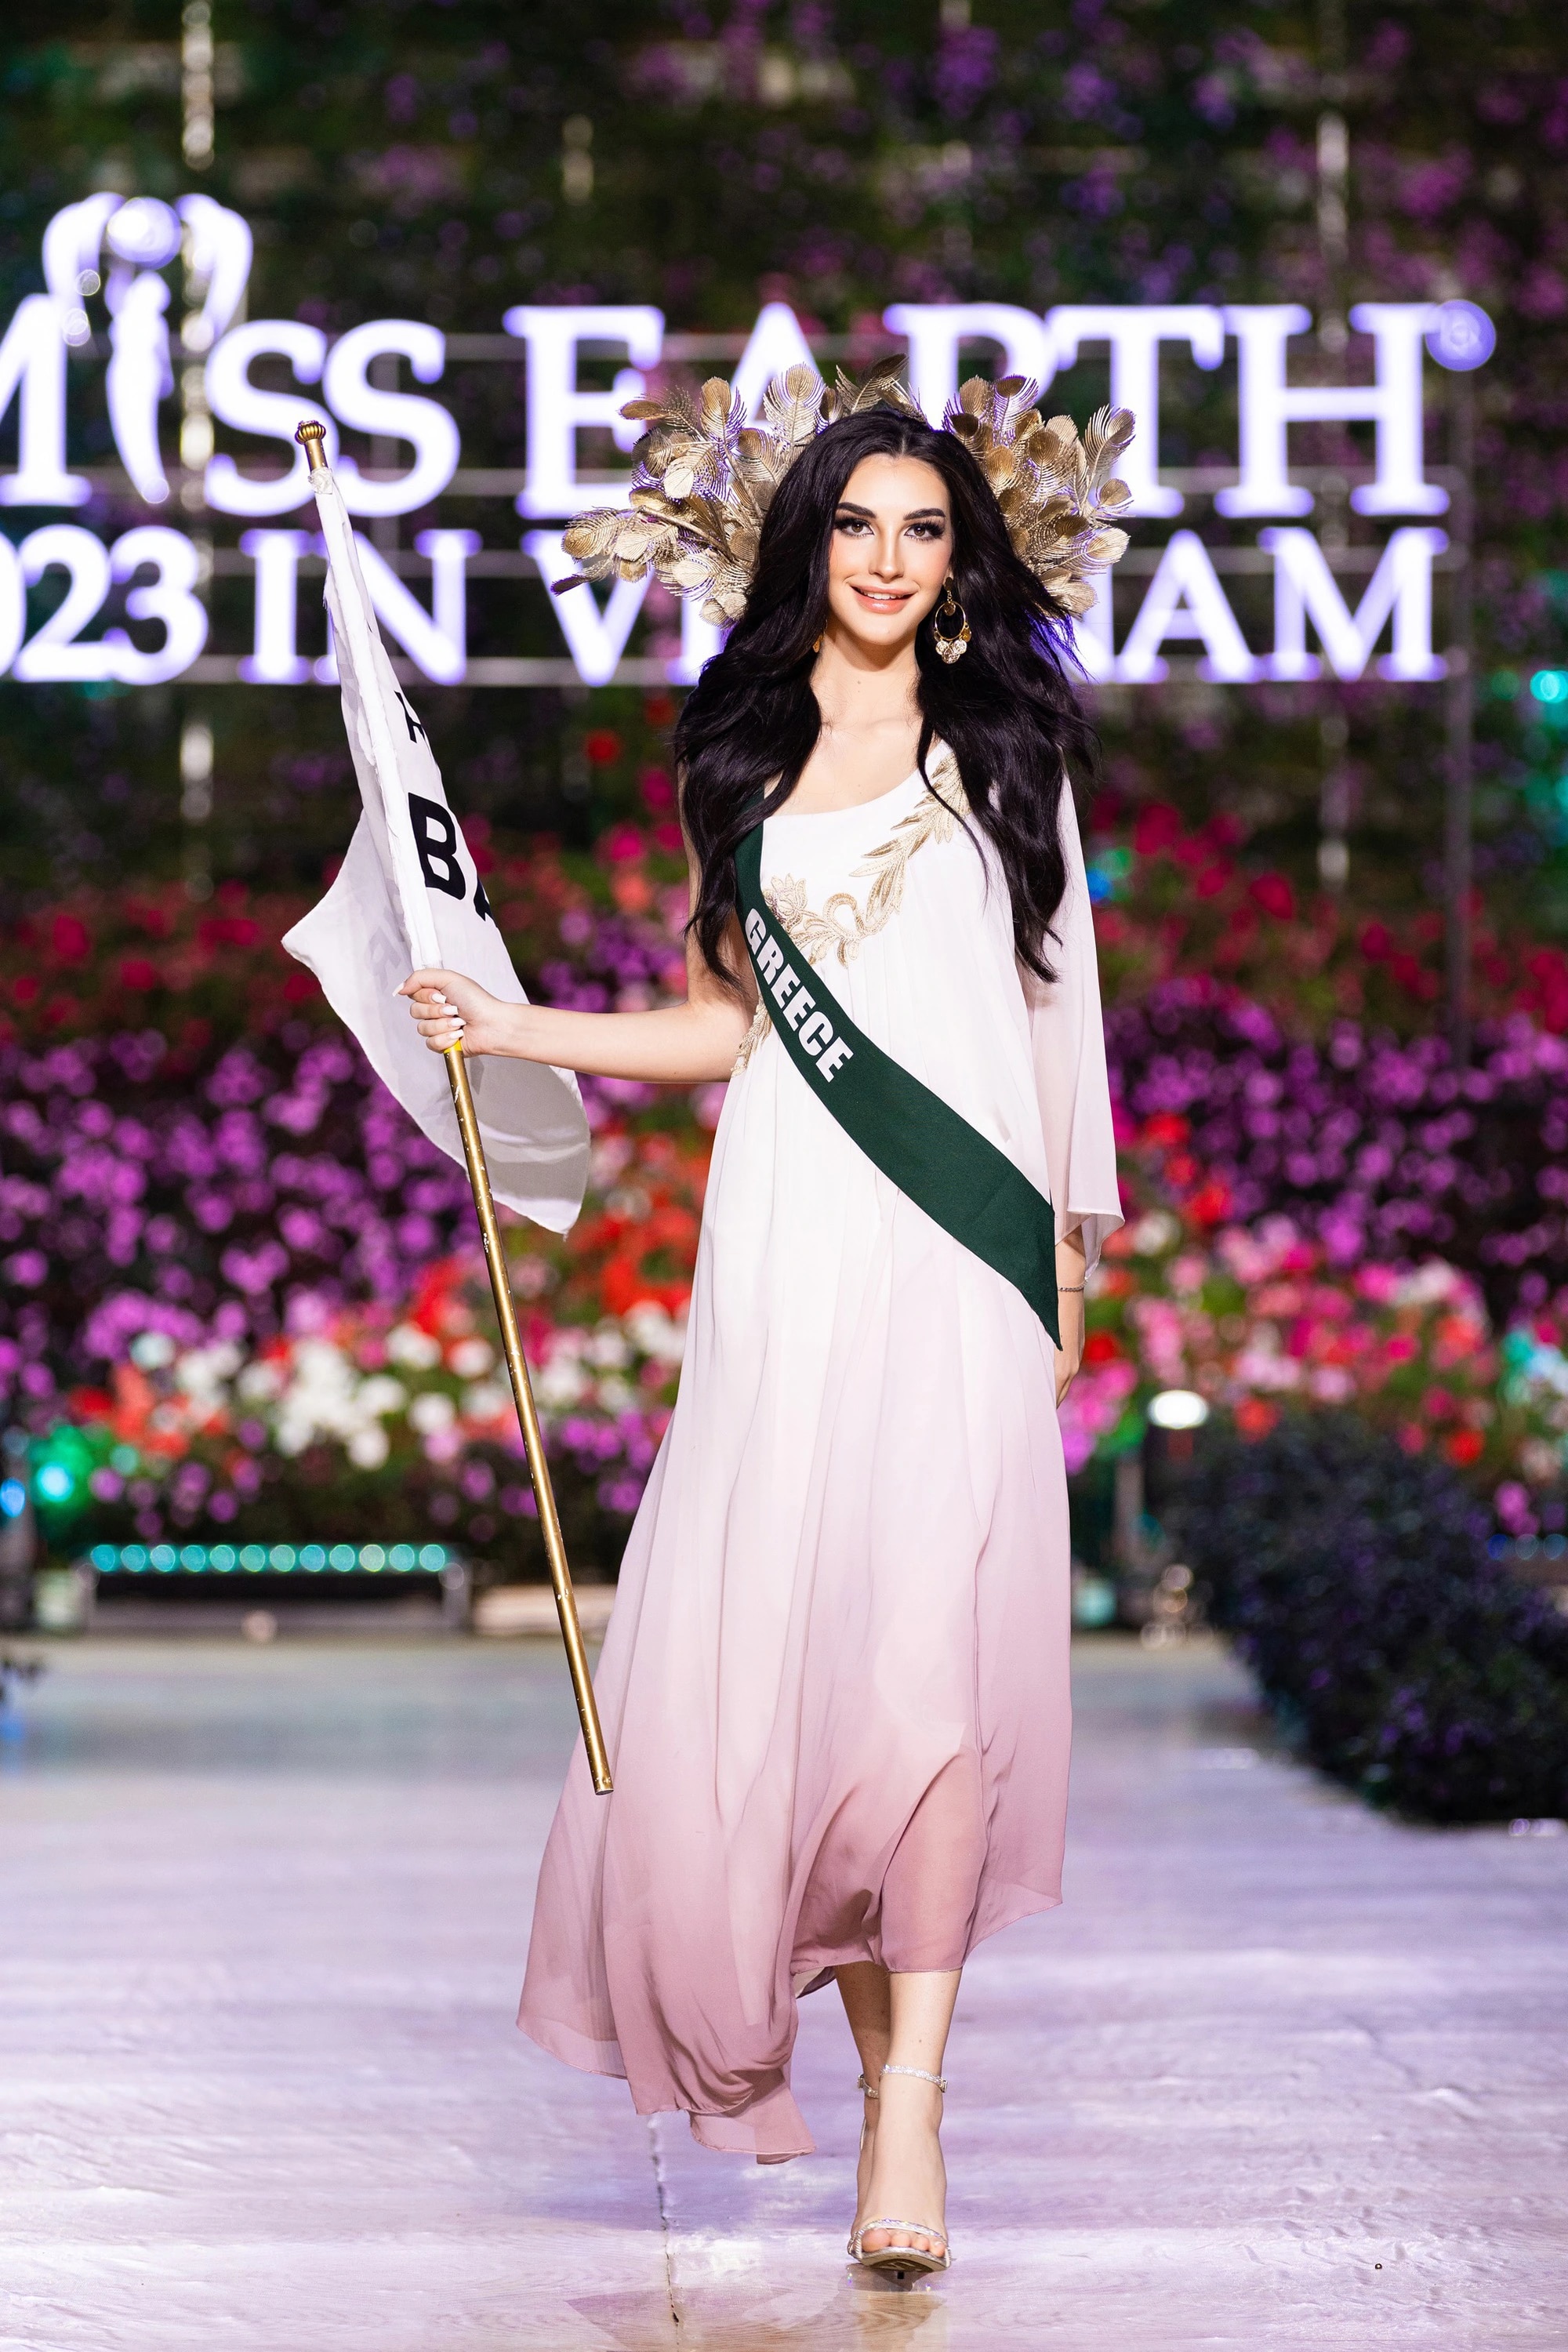 Bán kết Miss Earth 2023 màn trình Trang phục Dân tộc bùng nổ hình ảnh cỏ hoa, muông thú - Ảnh 28.